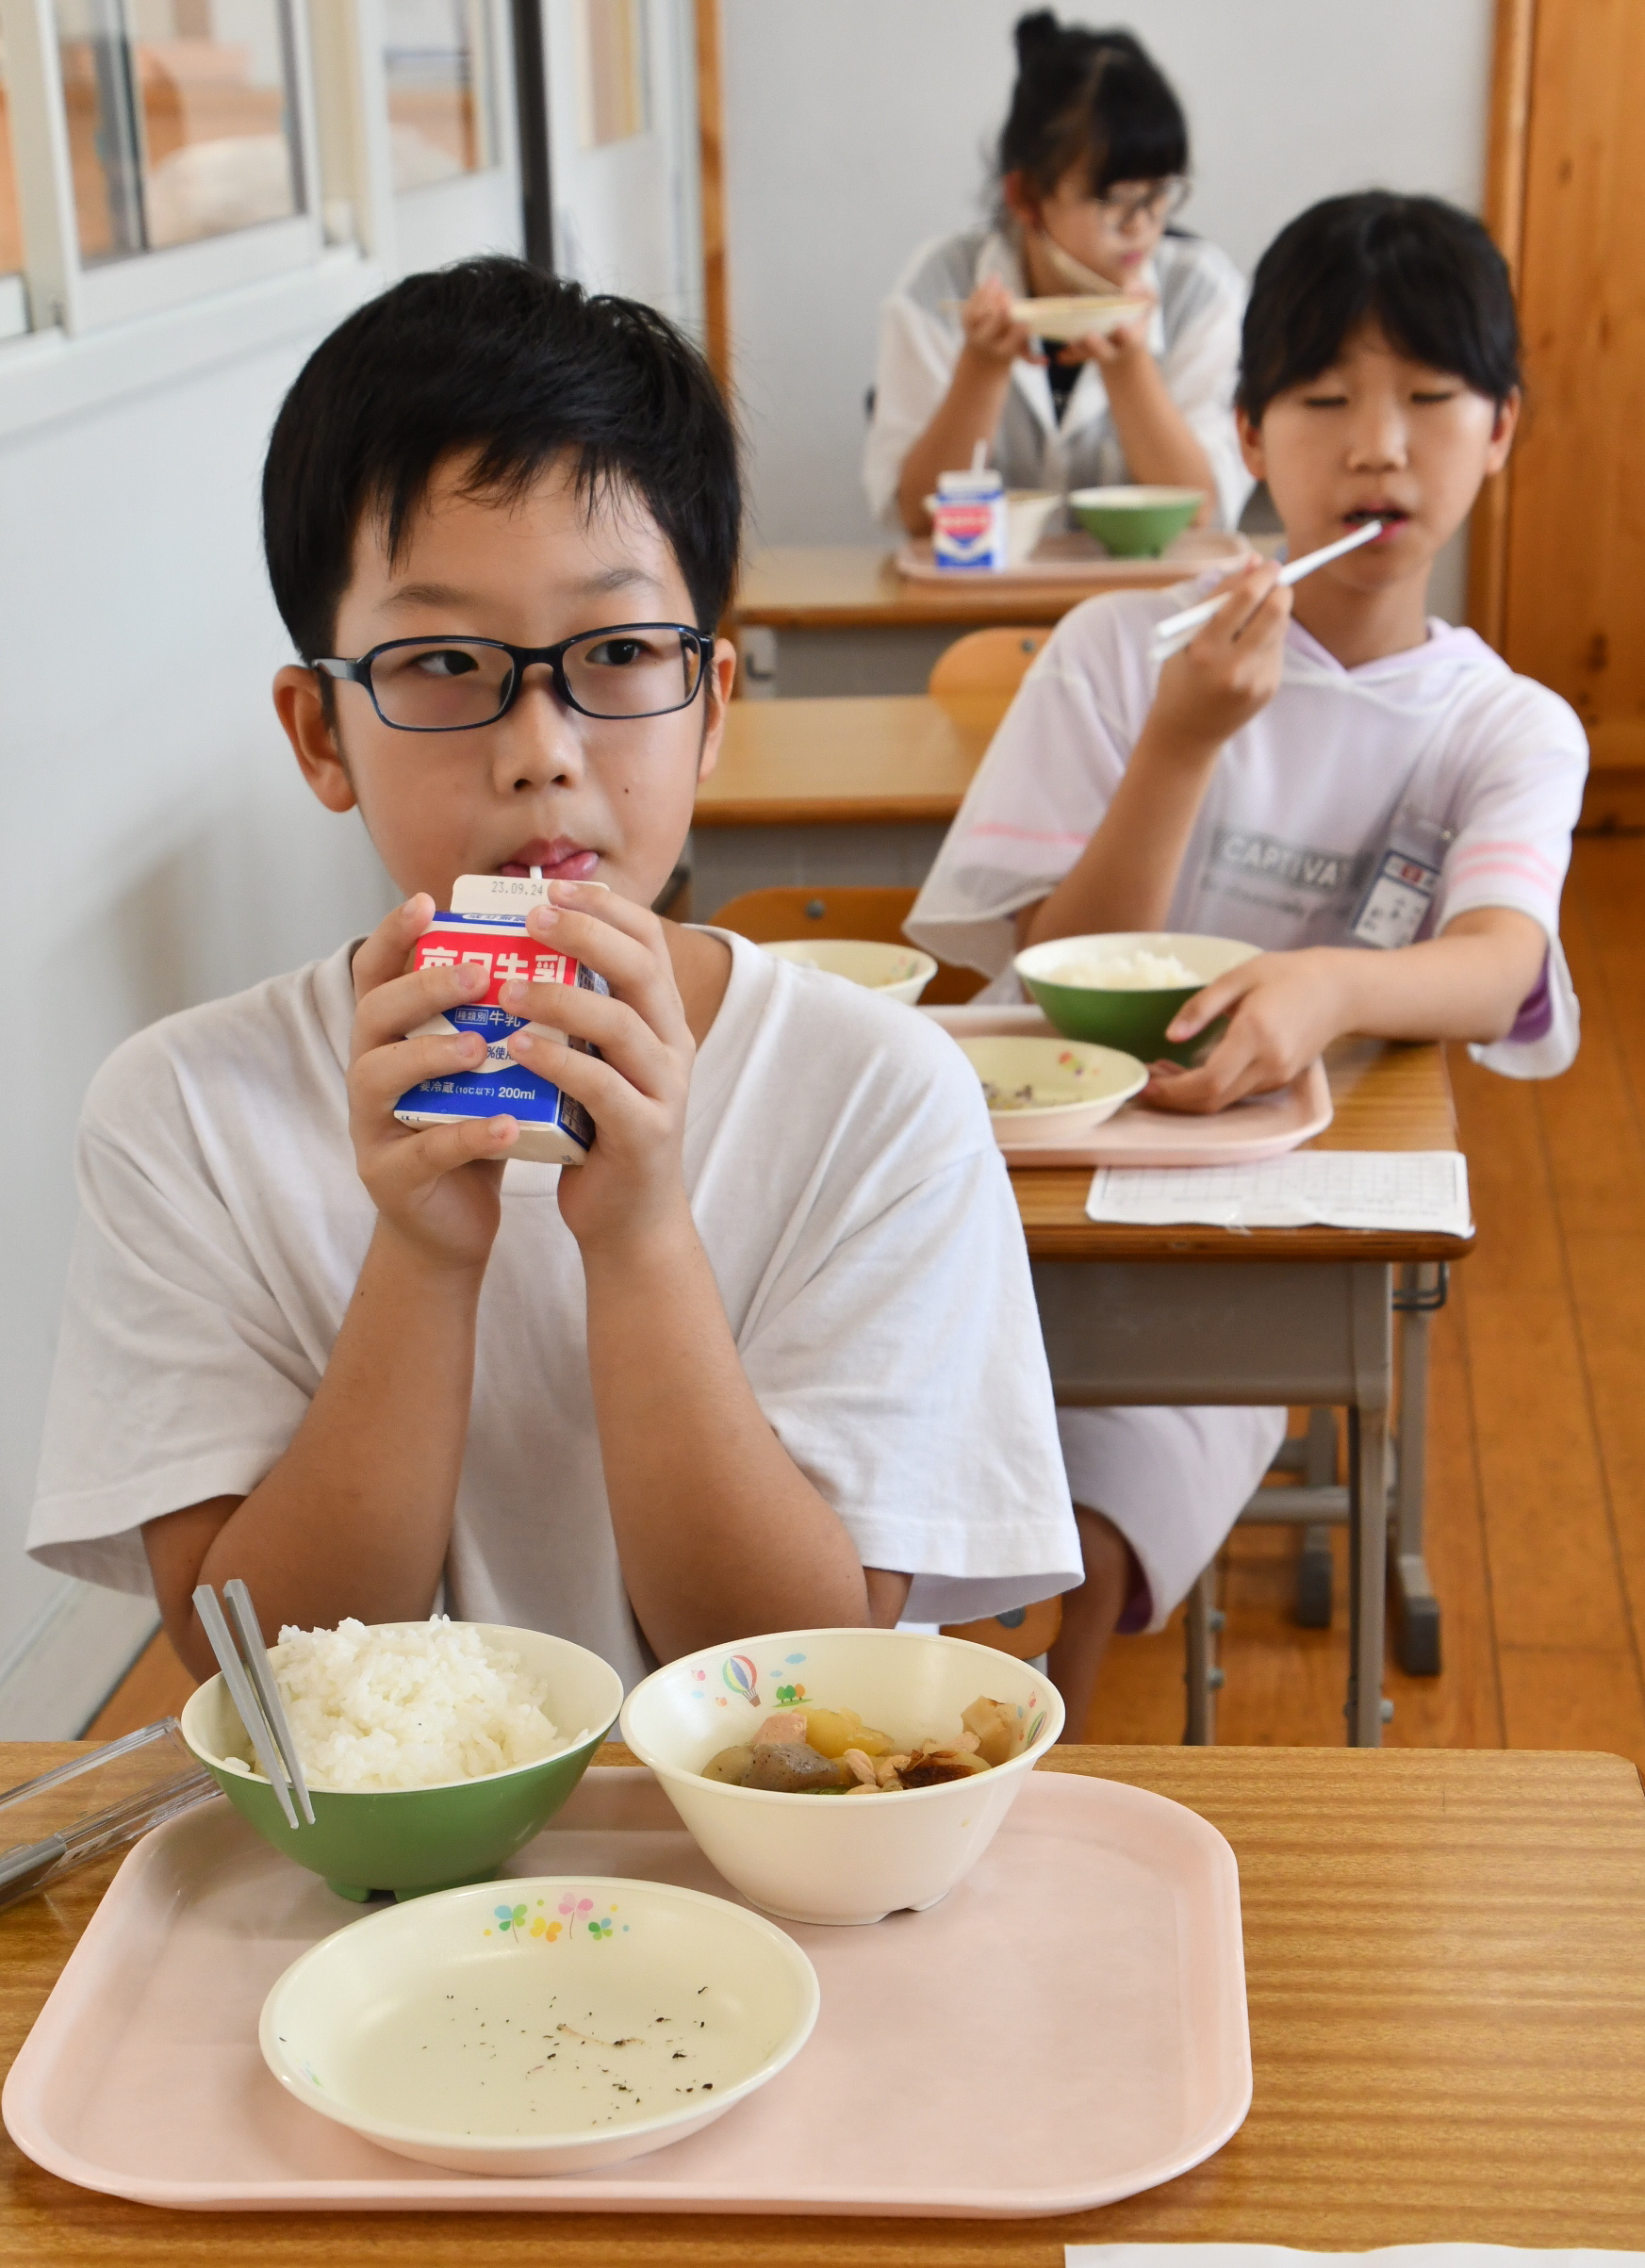 和食とあわない」学校給食に牛乳不要論 コスト高も議論の背景 - 産経